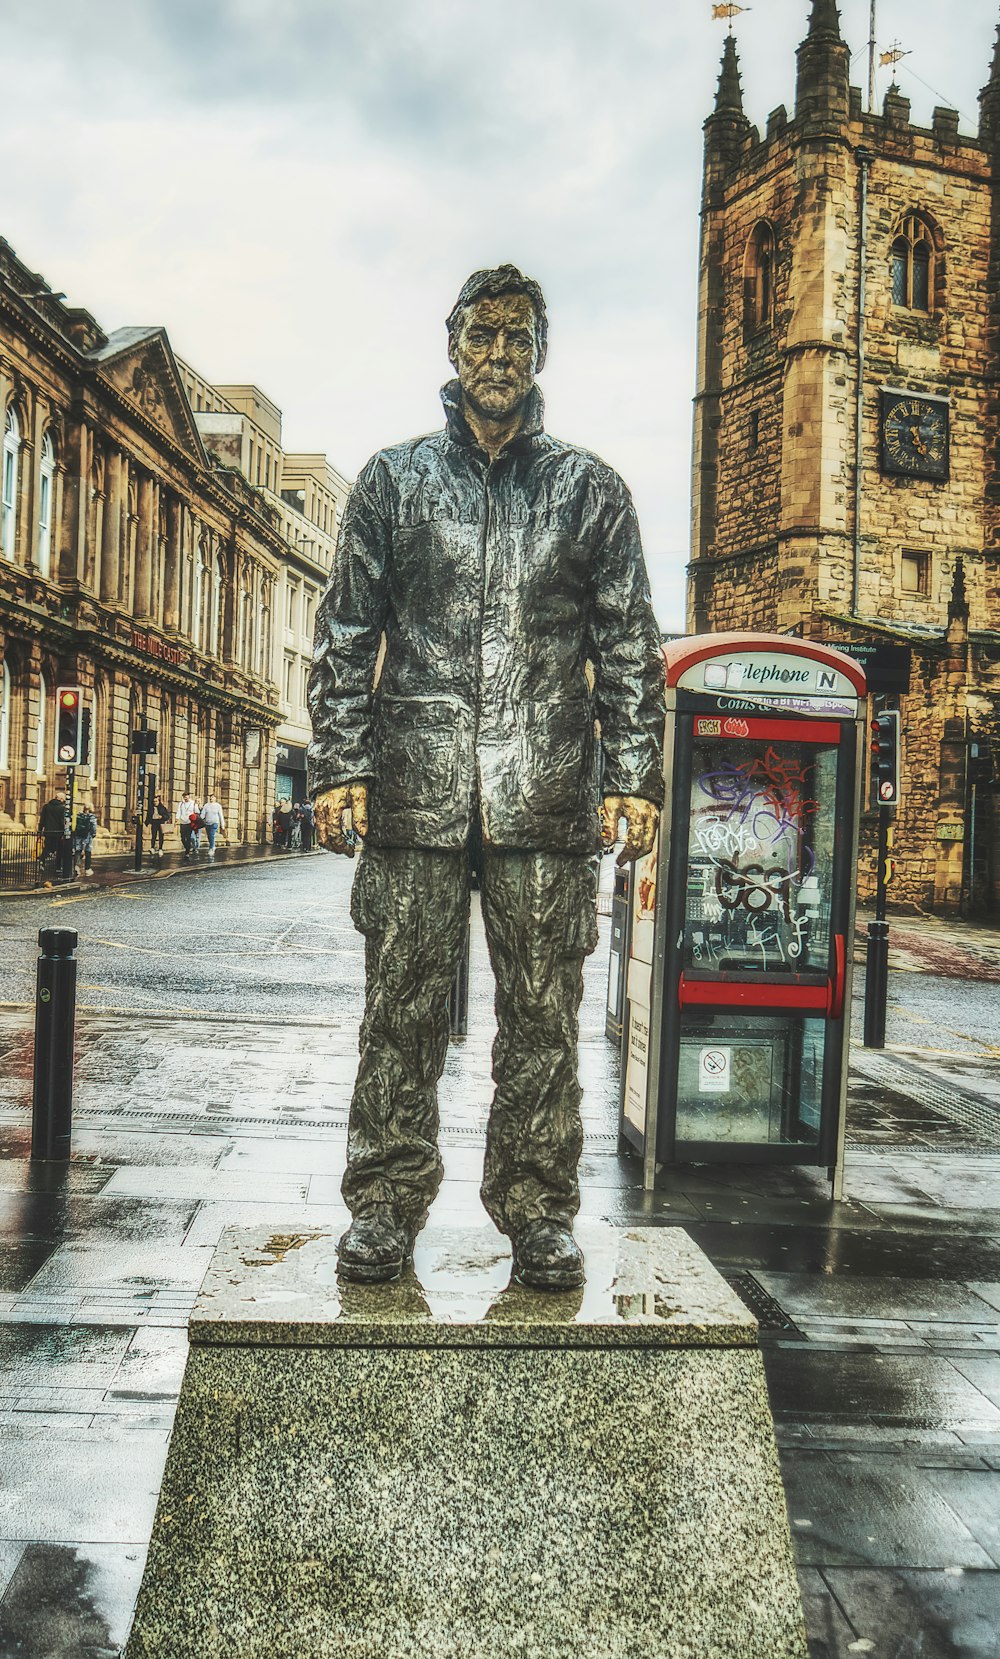 Una estatua de un hombre de pie junto a una cabina telefónica